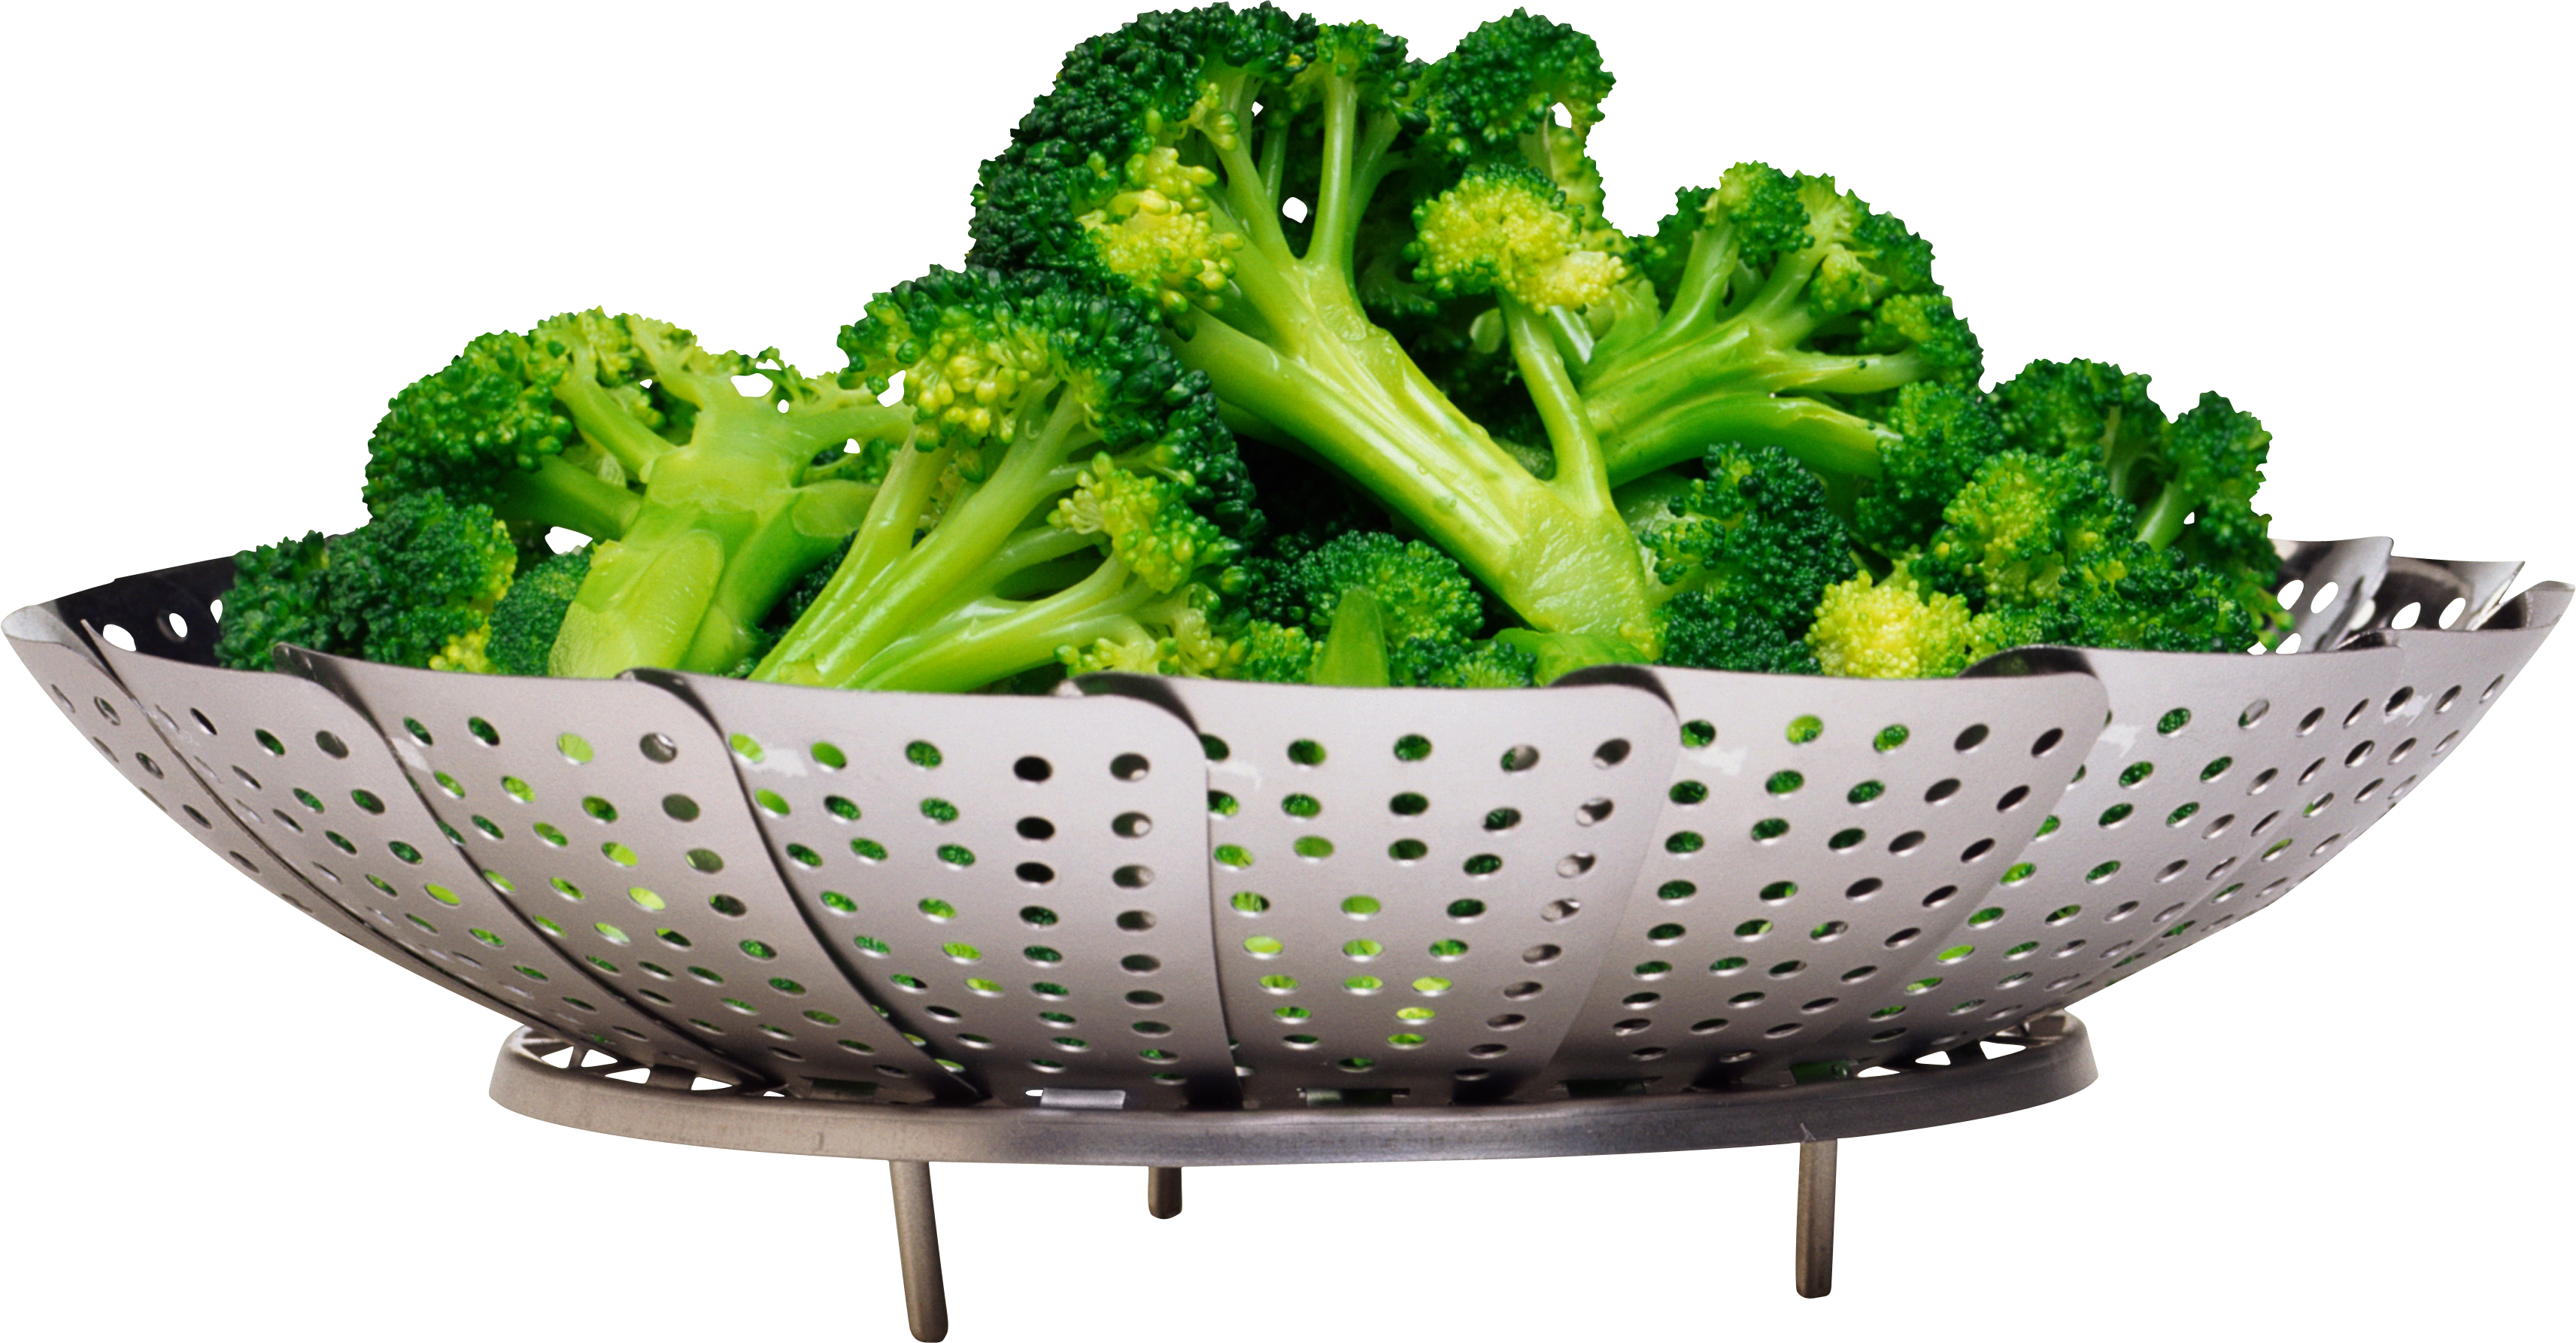 Broccoli Salad Png Image   Broccoli Salad Png Image